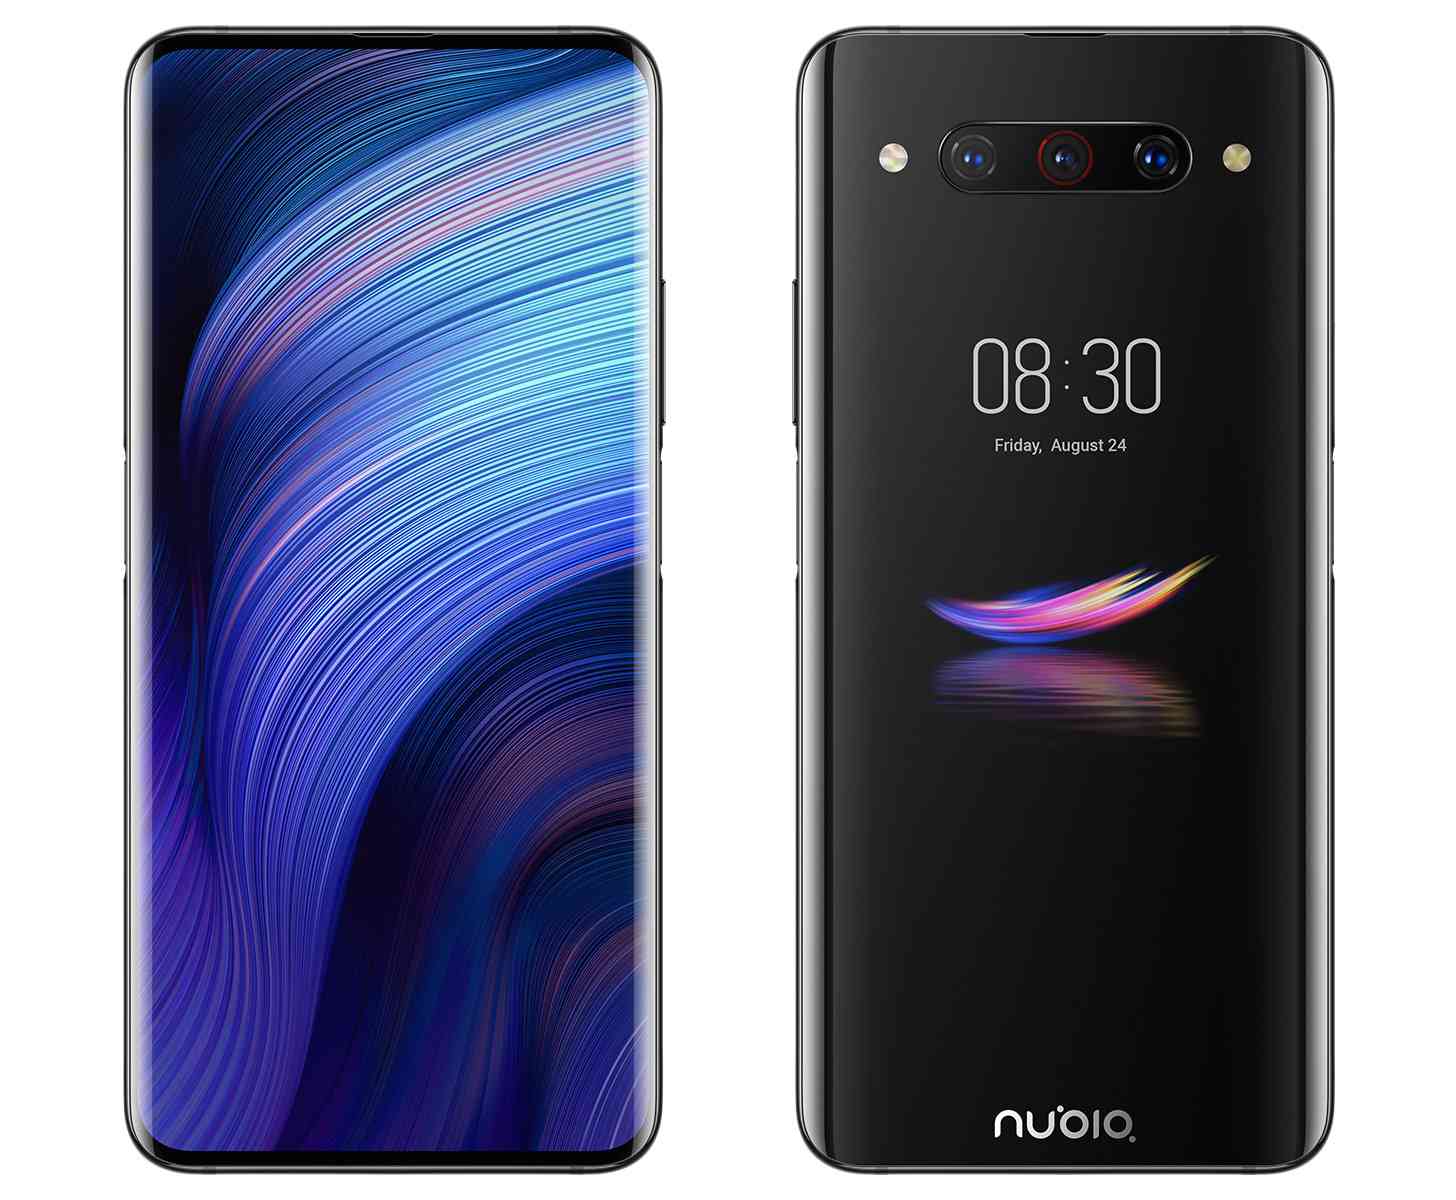 Nubia Z20 dual screens